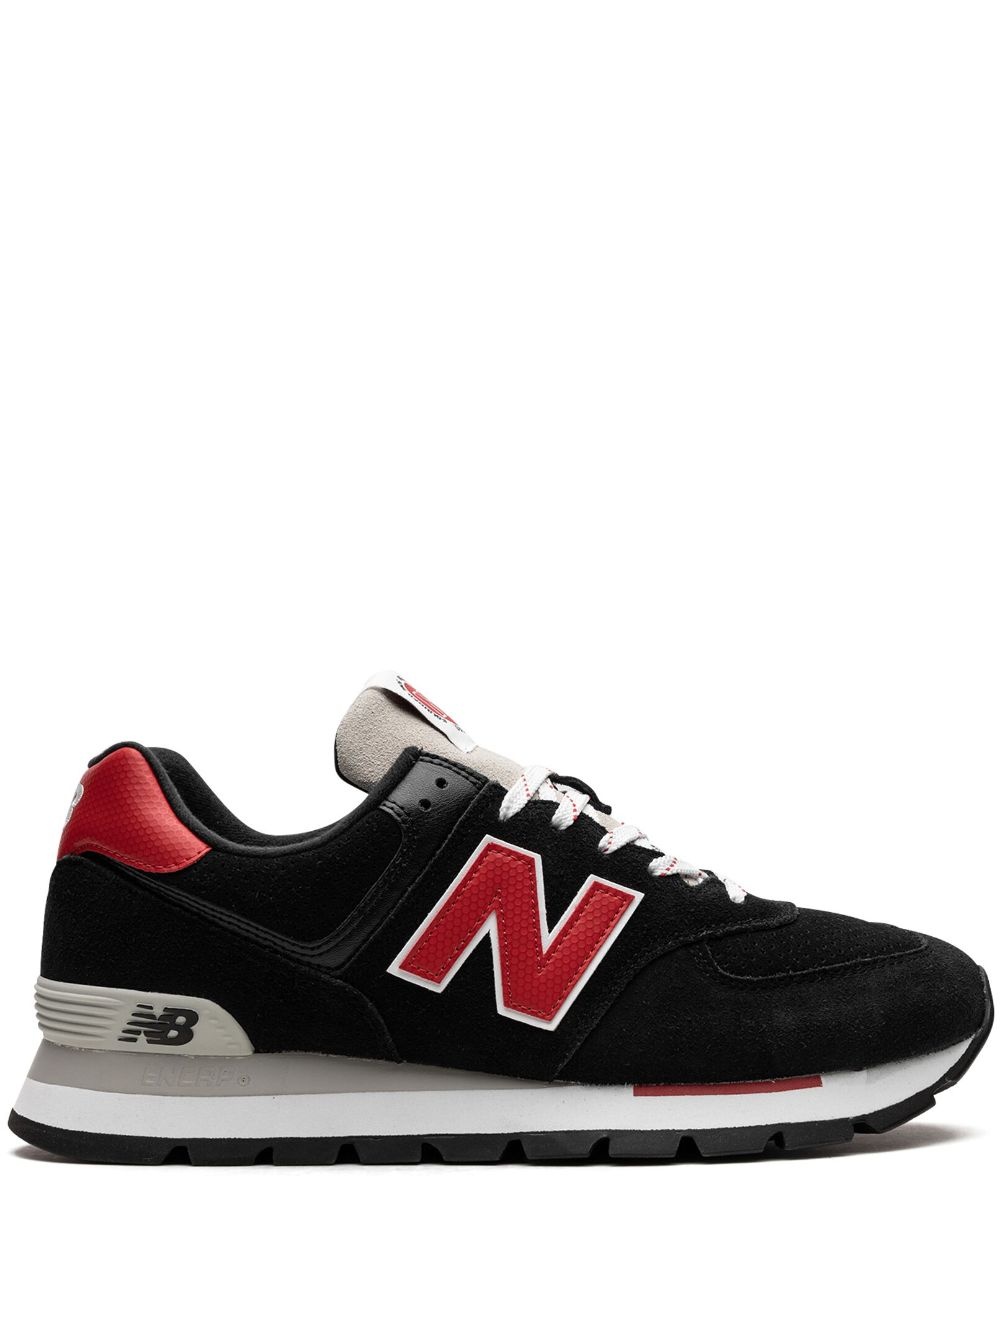 574 "Black/Red" sneakers - 1